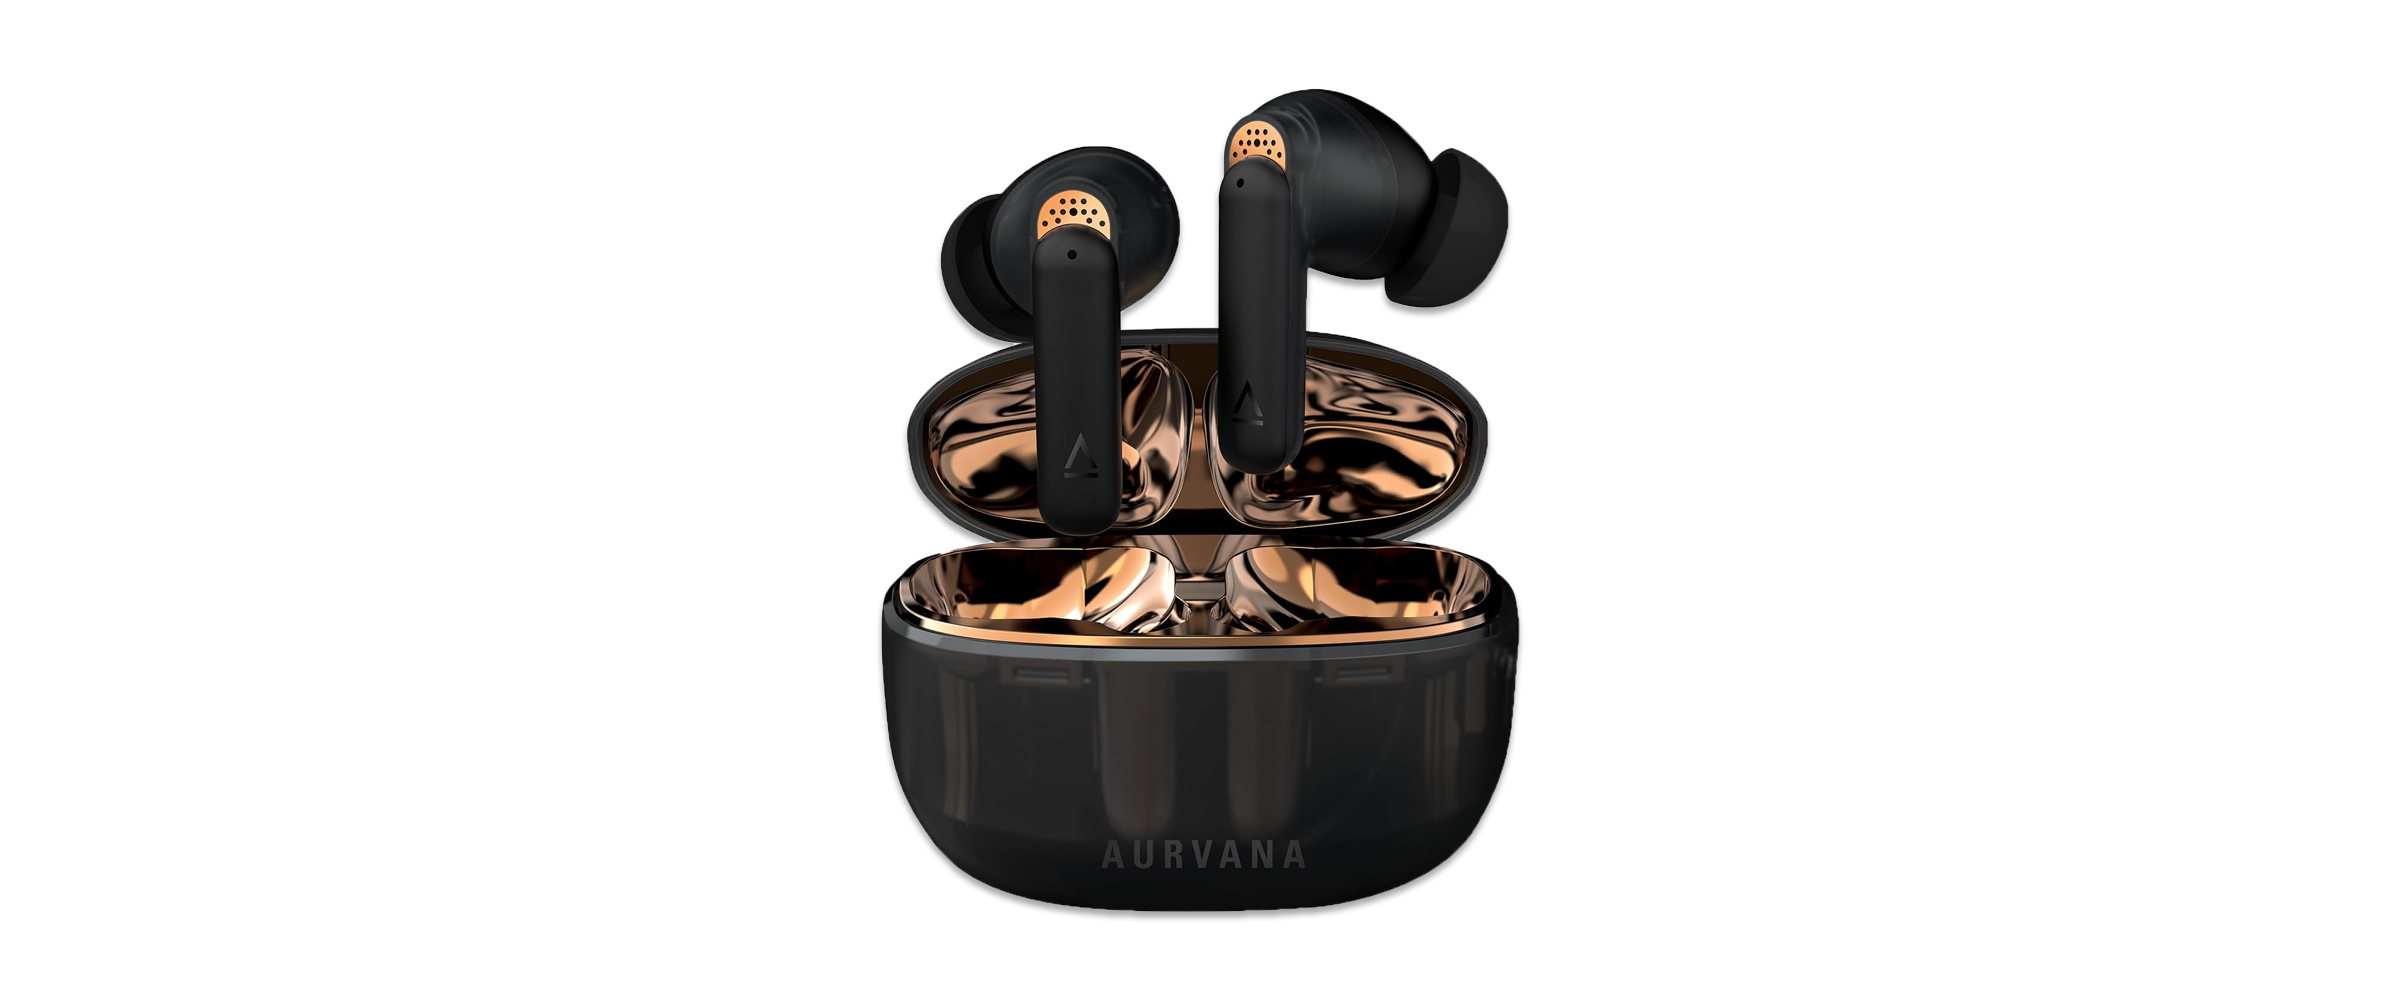 Die In-Ear-Kopfhörer Creative Aurvana Ace 2 vor weißem Hintergrund. Die Kopfhörer zeichnen sich durch den Mix aus durscheinendem Schwarz und glänzendem Kupfer aus.